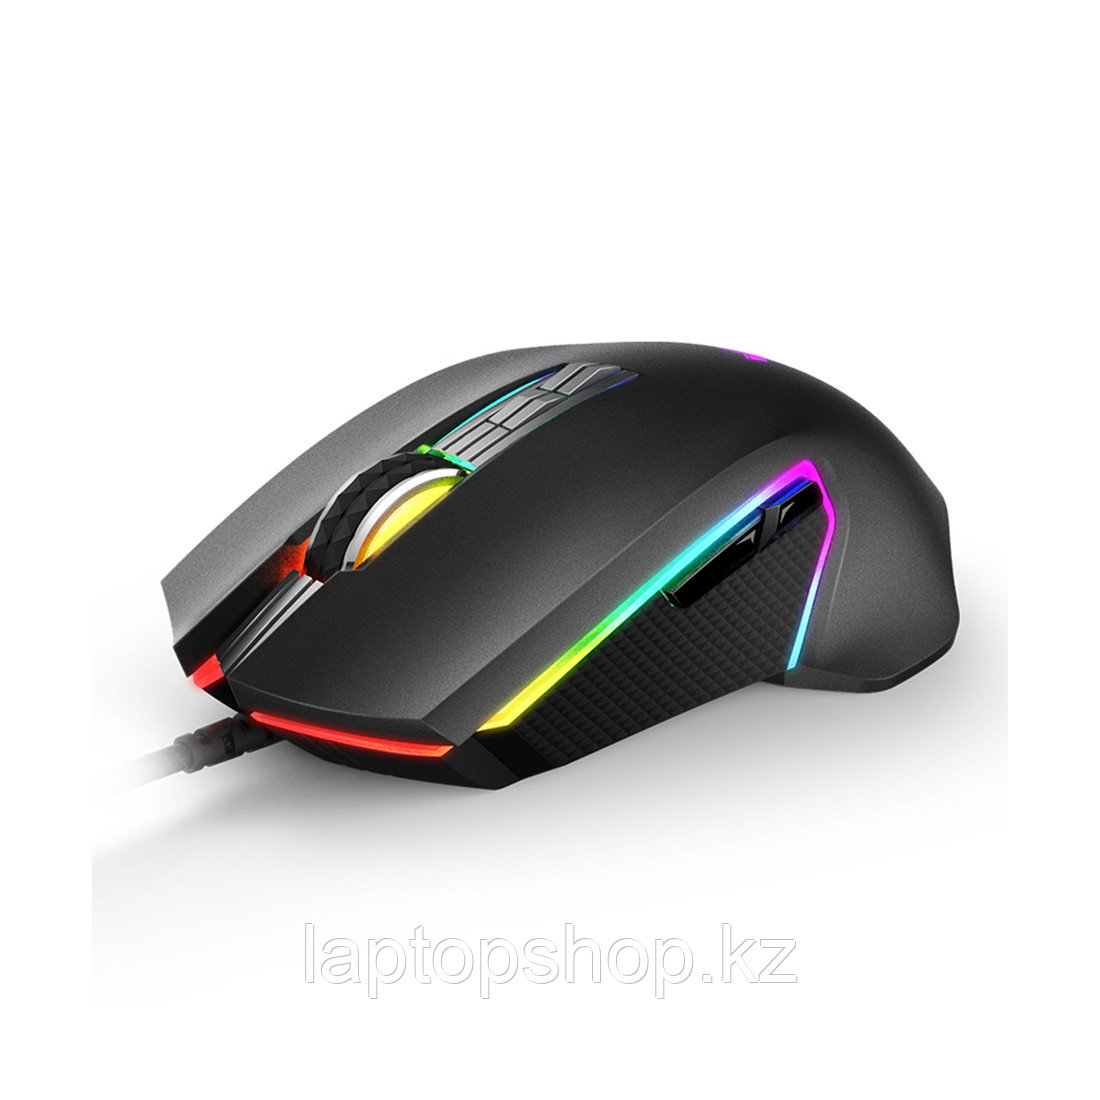 Компьютерная мышь Rapoo V20 Pro, фото 1